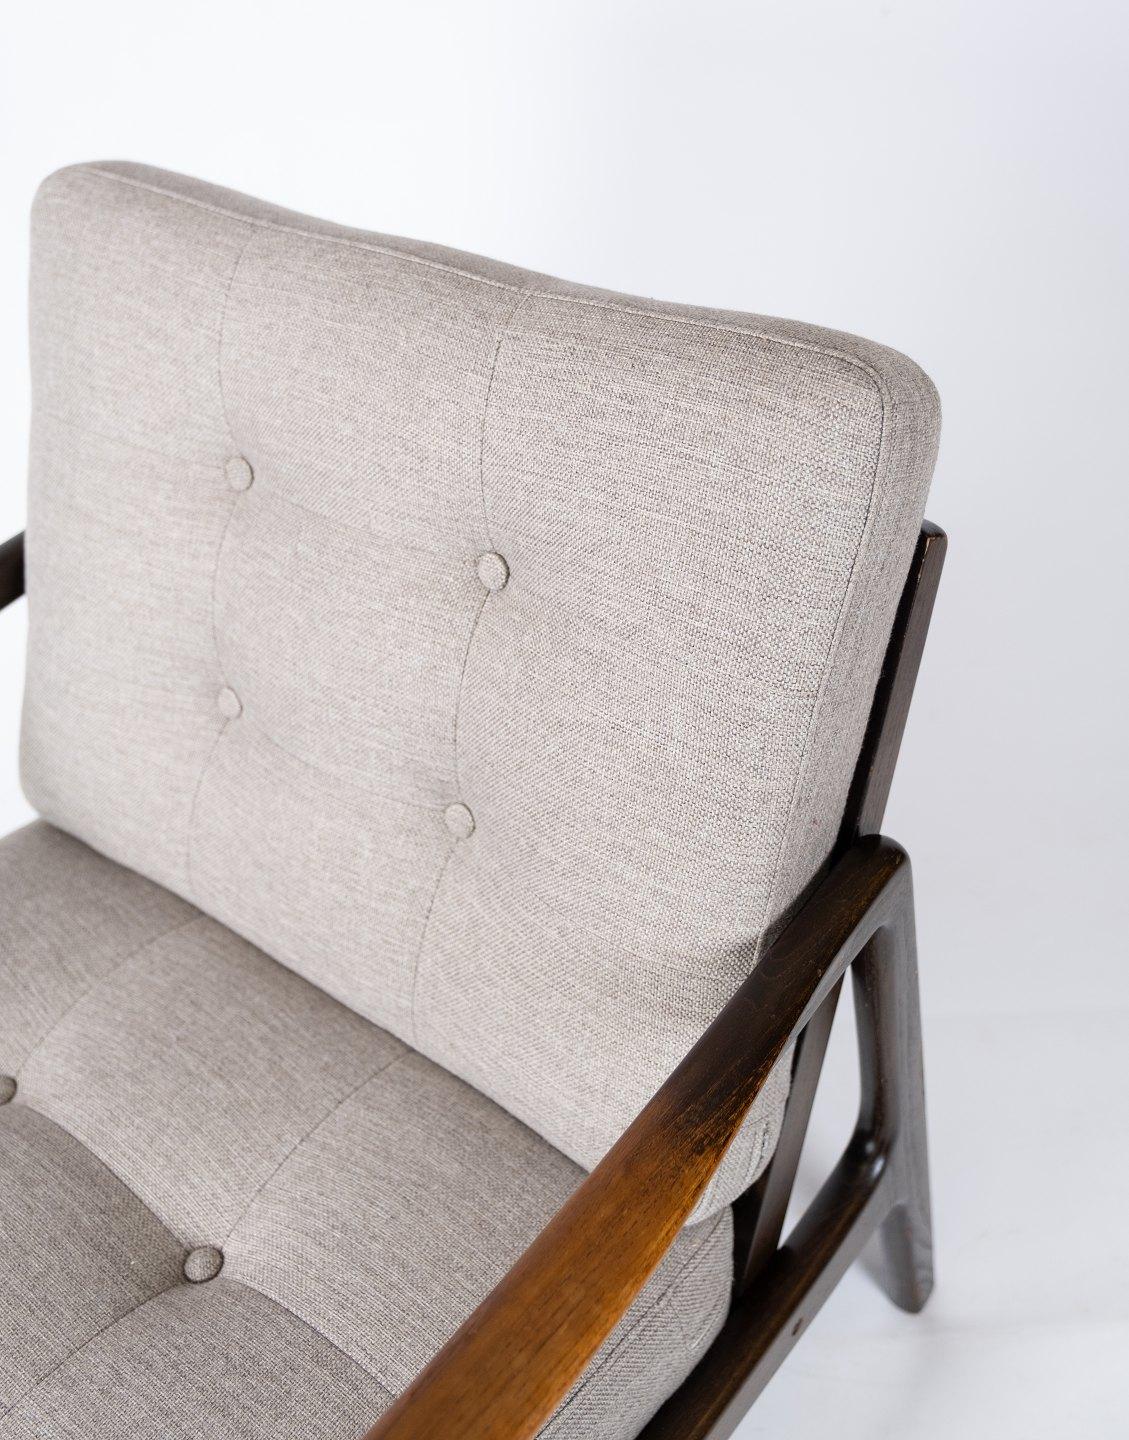 
Dieser elegante, aus Teakholz gefertigte und fachmännisch mit weicher grauer Wolle gepolsterte Sessel ist ein atemberaubendes Beispiel für skandinavisches Design aus der Mitte des Jahrhunderts. Dieser Stuhl wurde in den 1960er Jahren von dem